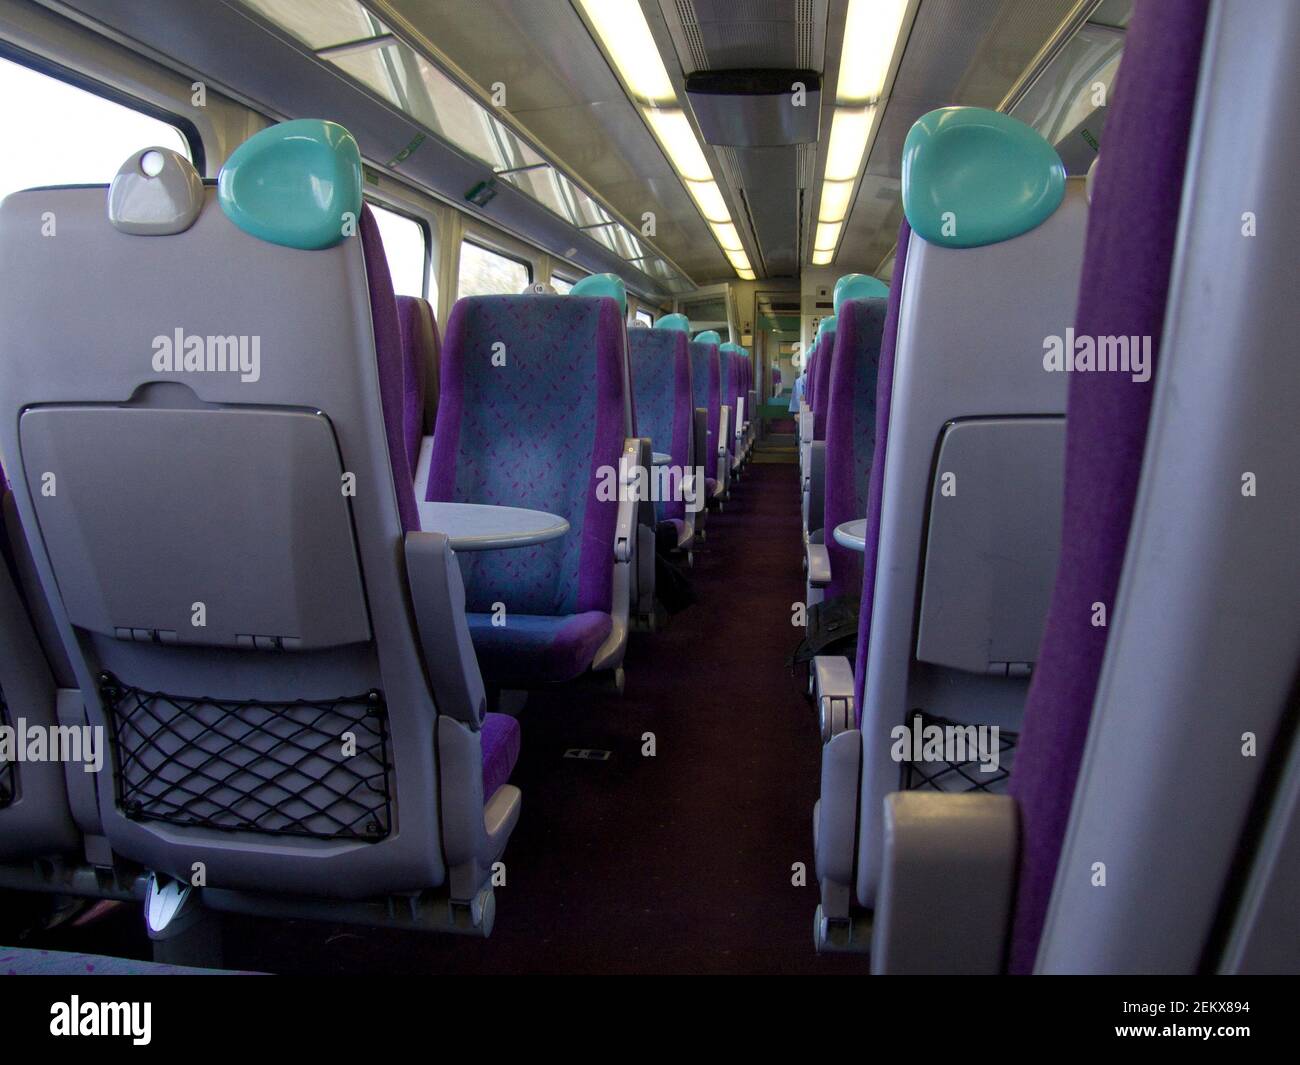 Sitzreihen in einem Zug, Platz nehmen, keine Reservierung erforderlich, Sitzplatz am Gang, Pendeln, Reisen, Urlaub Stockfoto